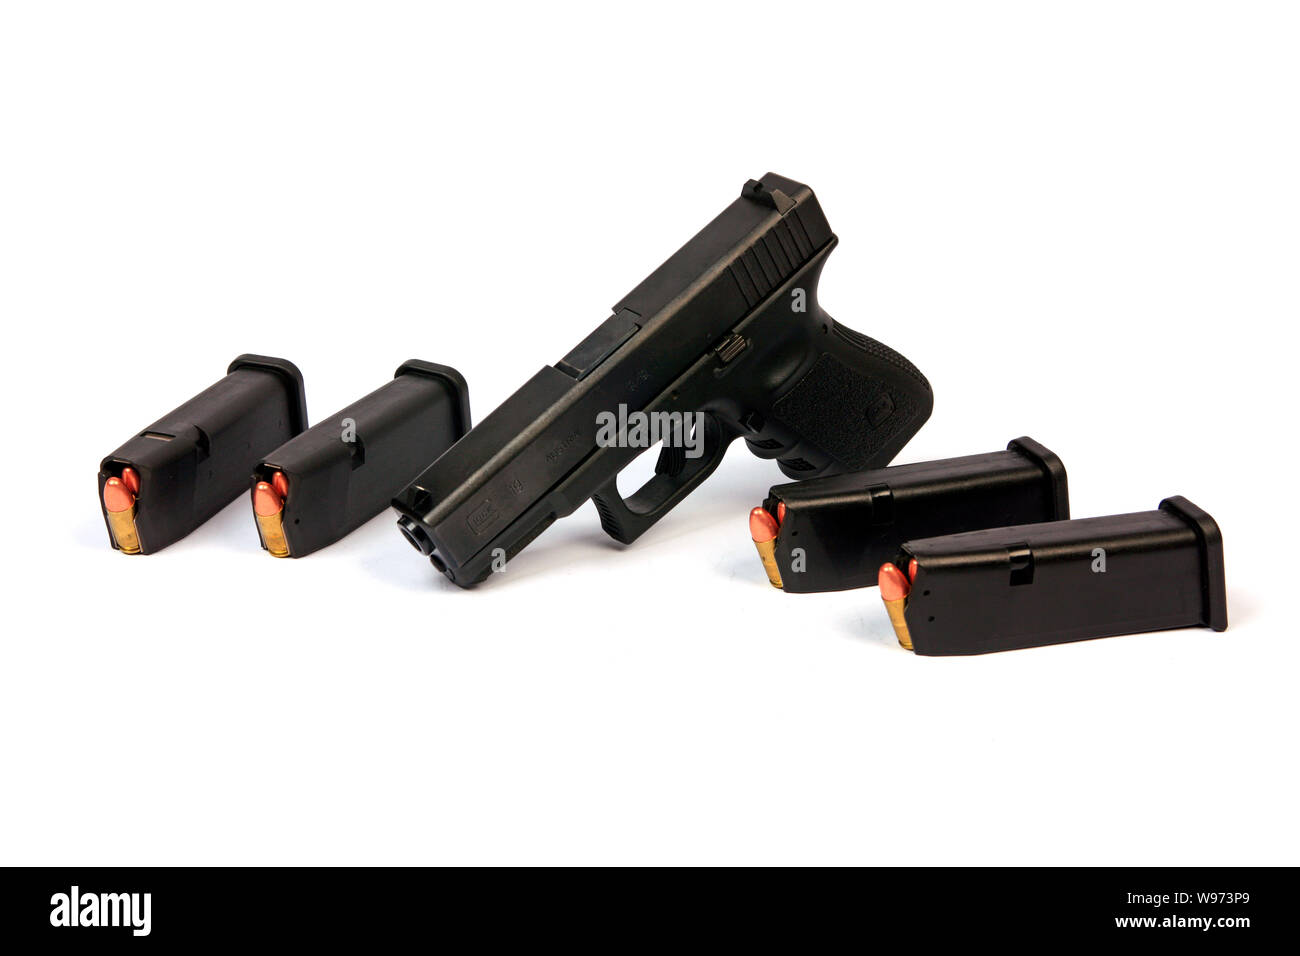 Glock 19 9mm semi-automatico pistola a mano con 4 15-round clip ammuntion Foto Stock